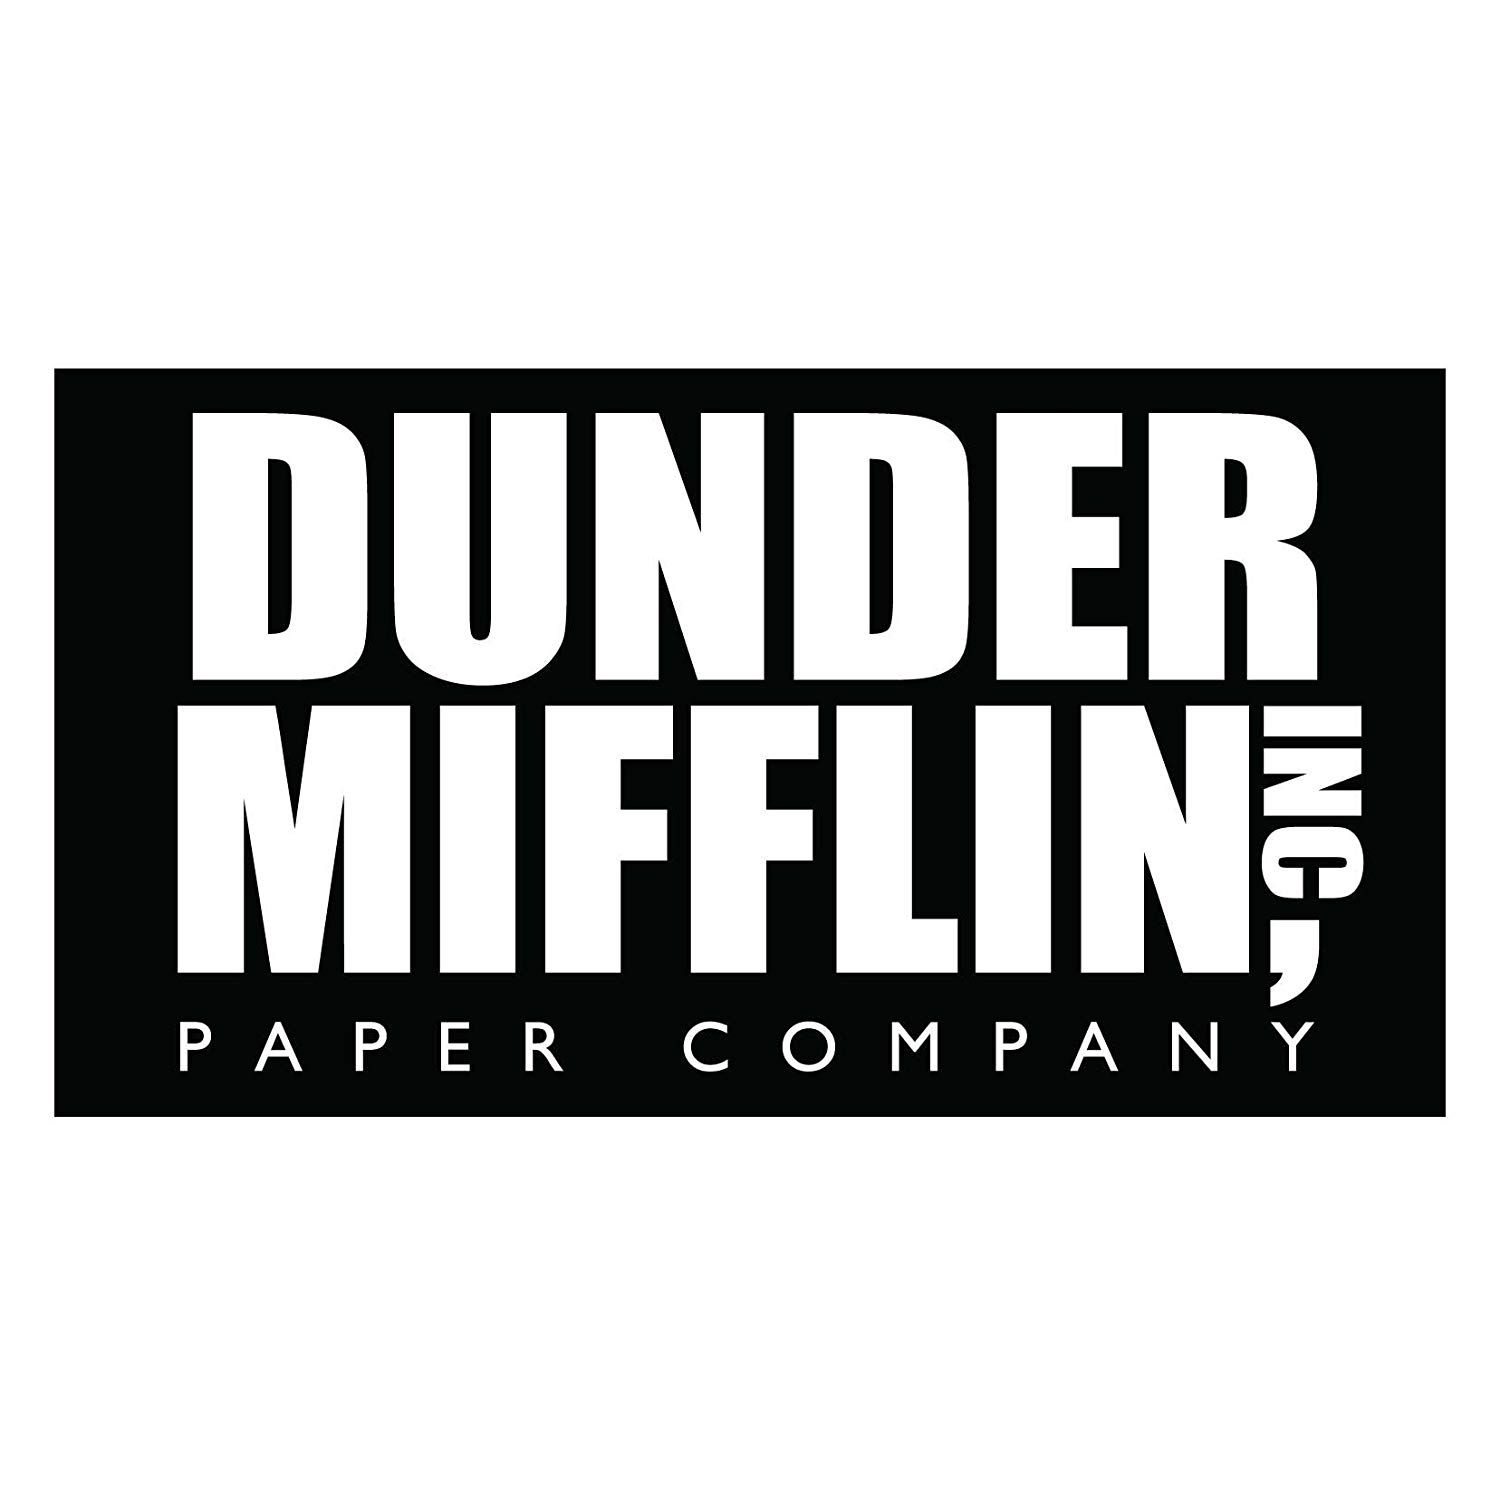 Dunder Mifflin Screen by complab2 on DeviantArt